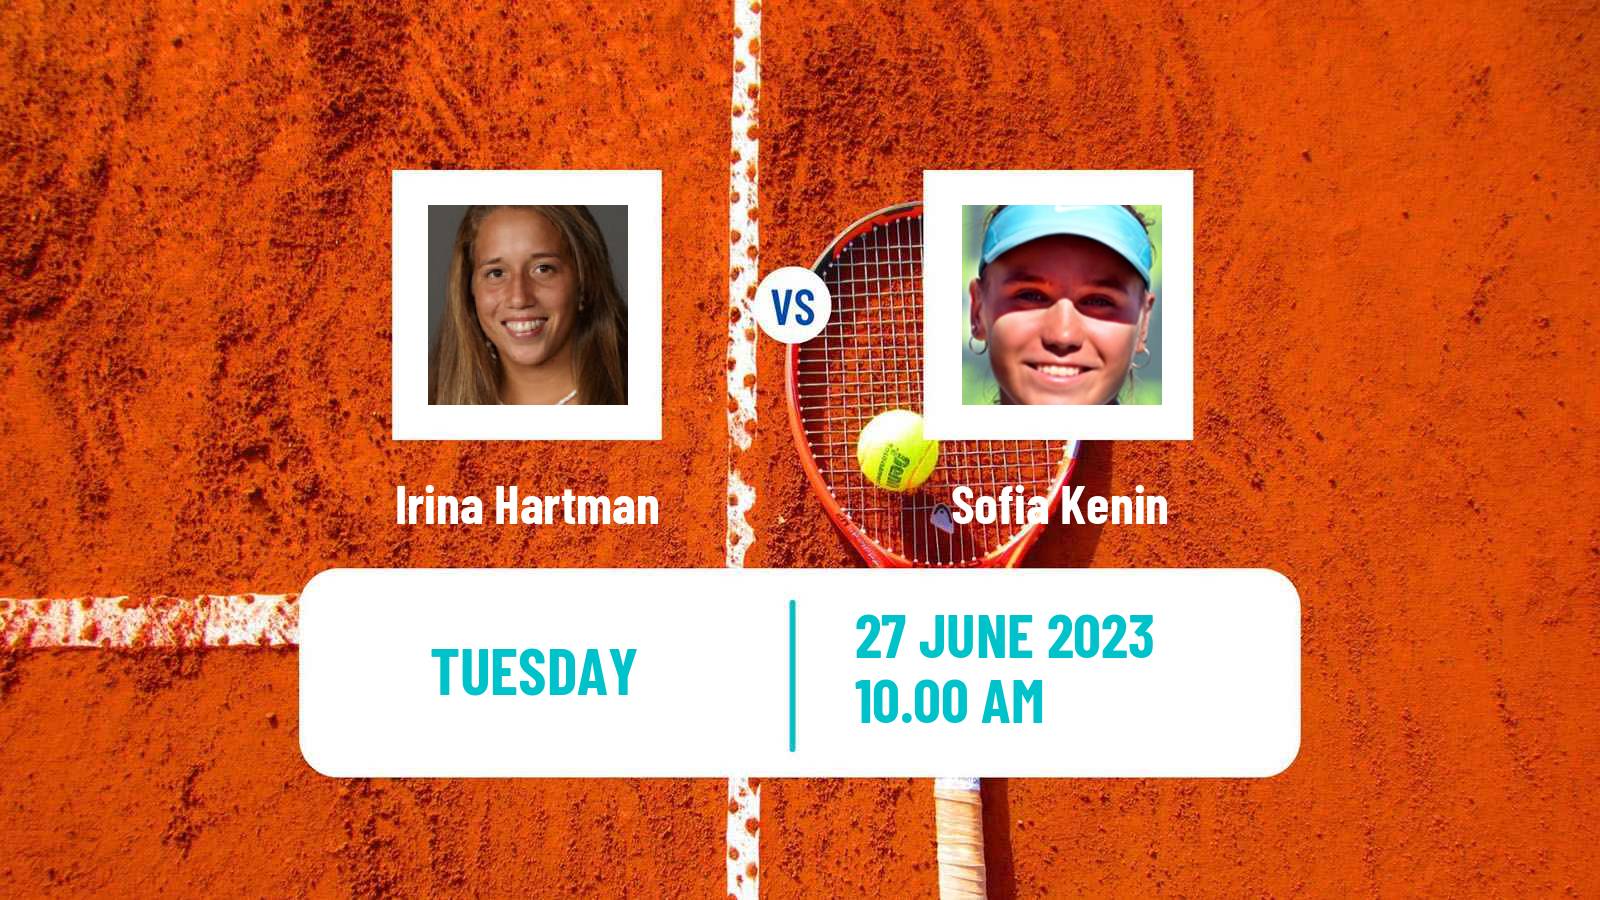 Tennis WTA Wimbledon Irina Hartman - Sofia Kenin